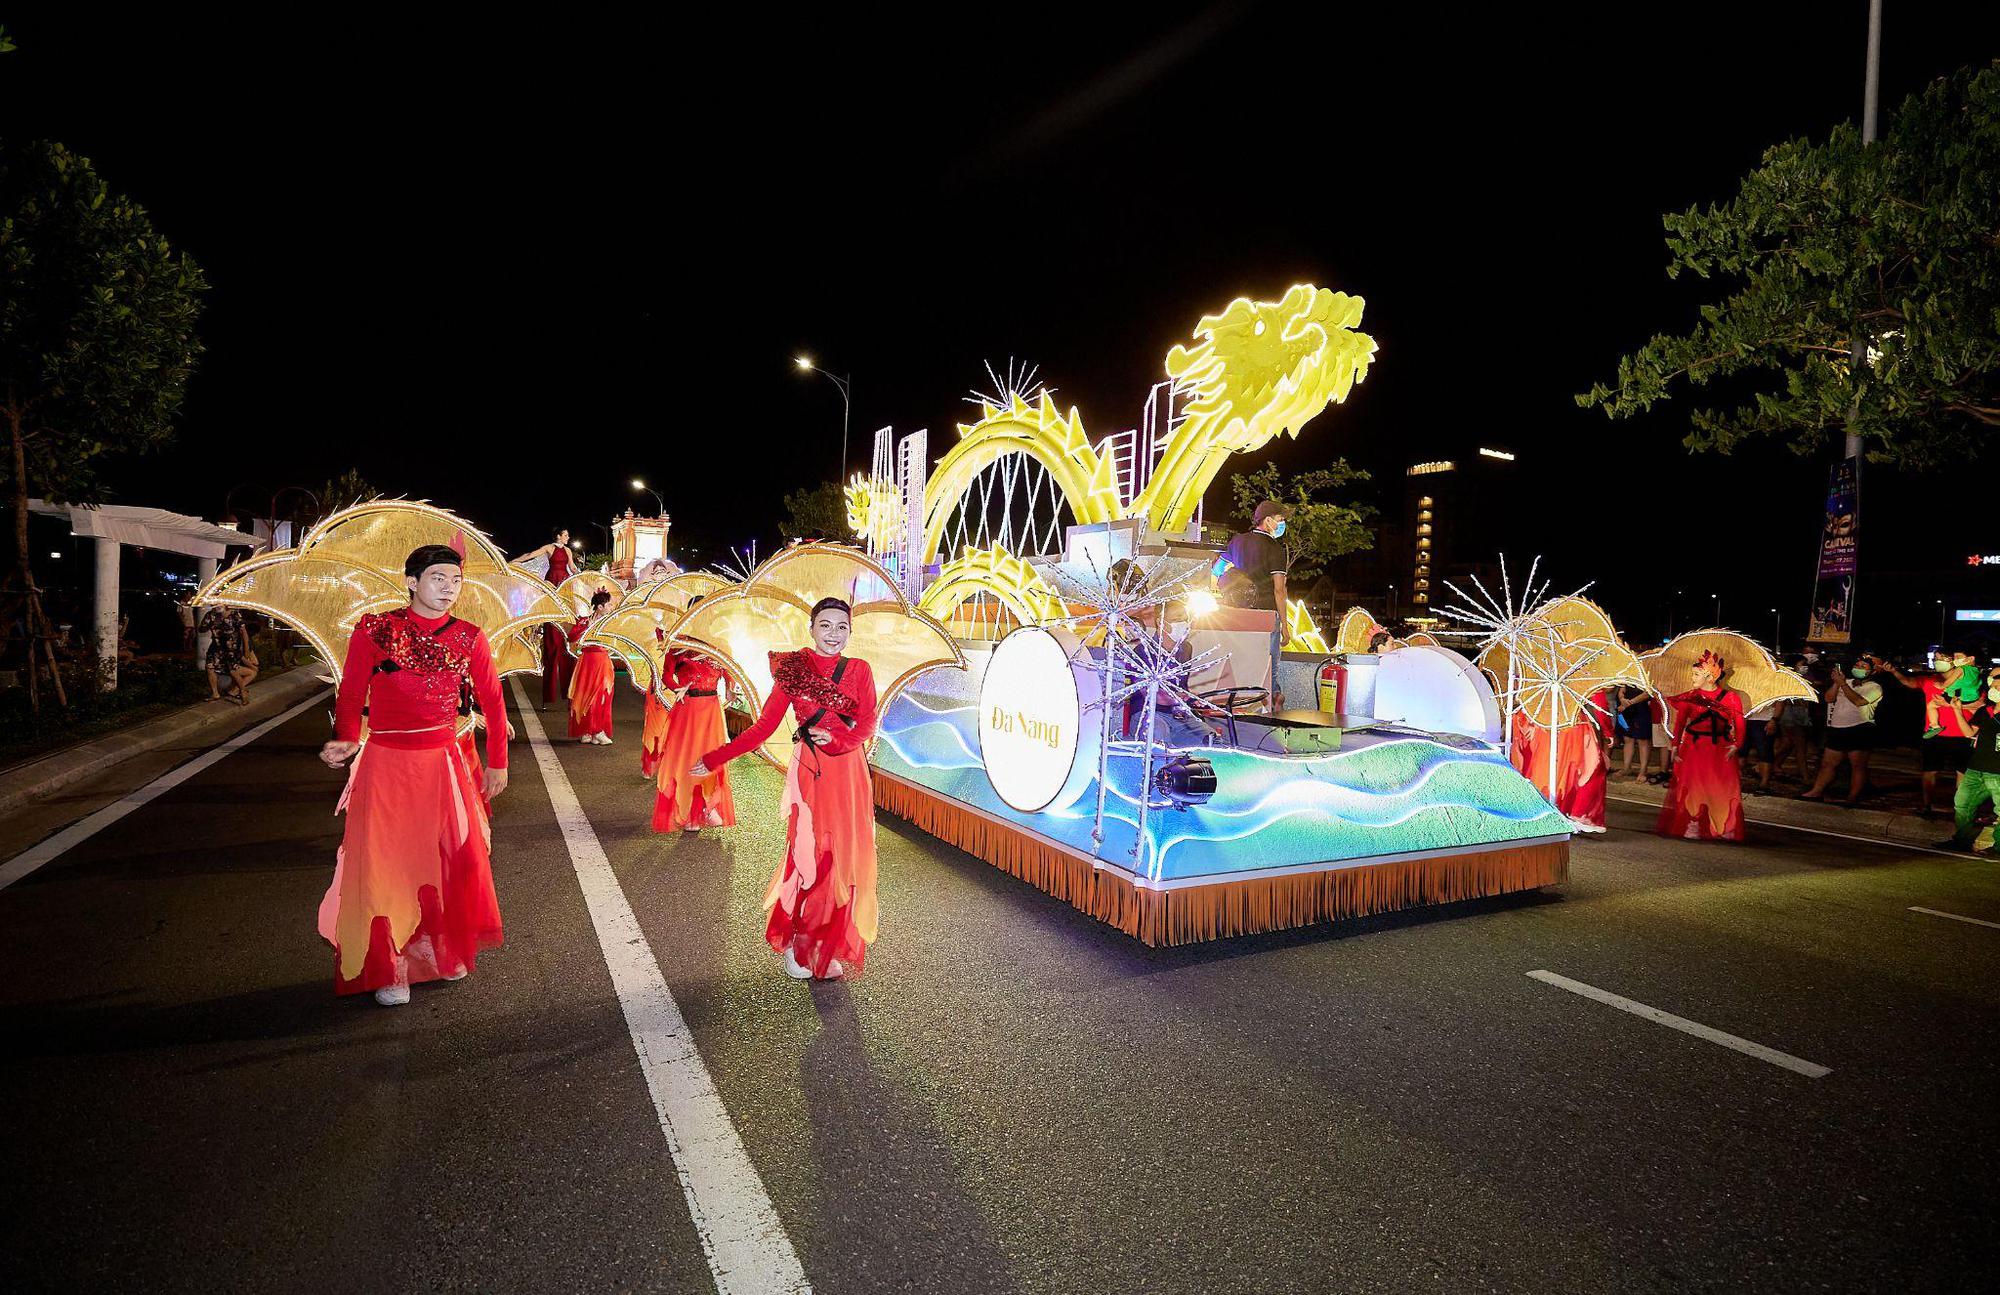 Đà Nẵng náo nhiệt với đêm lễ hội Carnival đường phố Sun Fest đầu tiên - Ảnh 3.